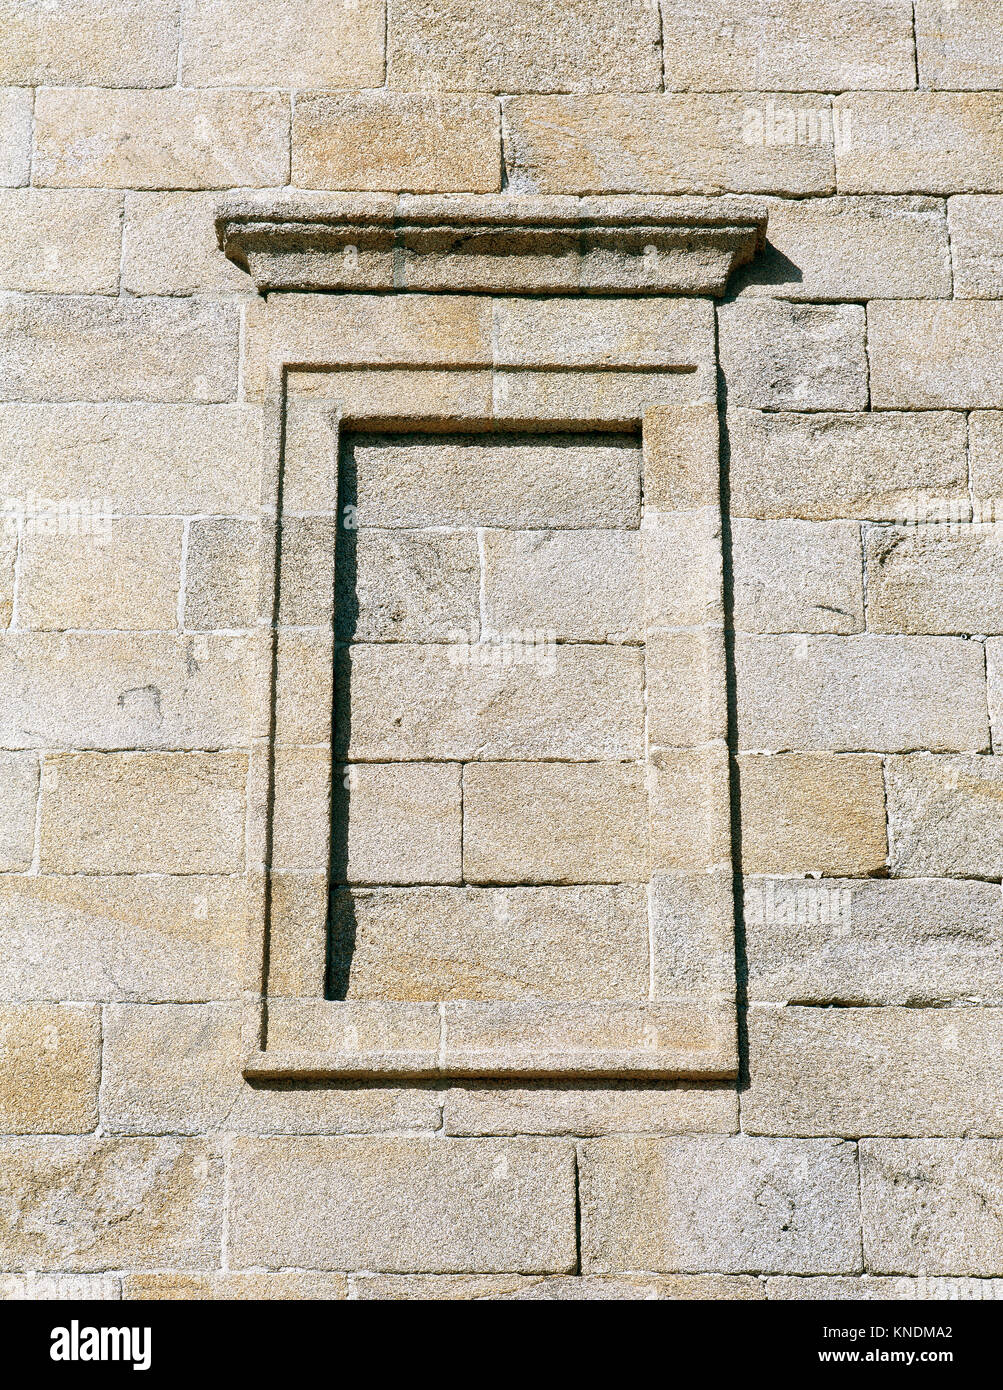 Turm des Herkules. 2. Antike römische Leuchtturm. 1791 durch Eustaqui Giannini wiederhergestellt. Detailfenster. A Coruna. Galizien, Spanien. Stockfoto